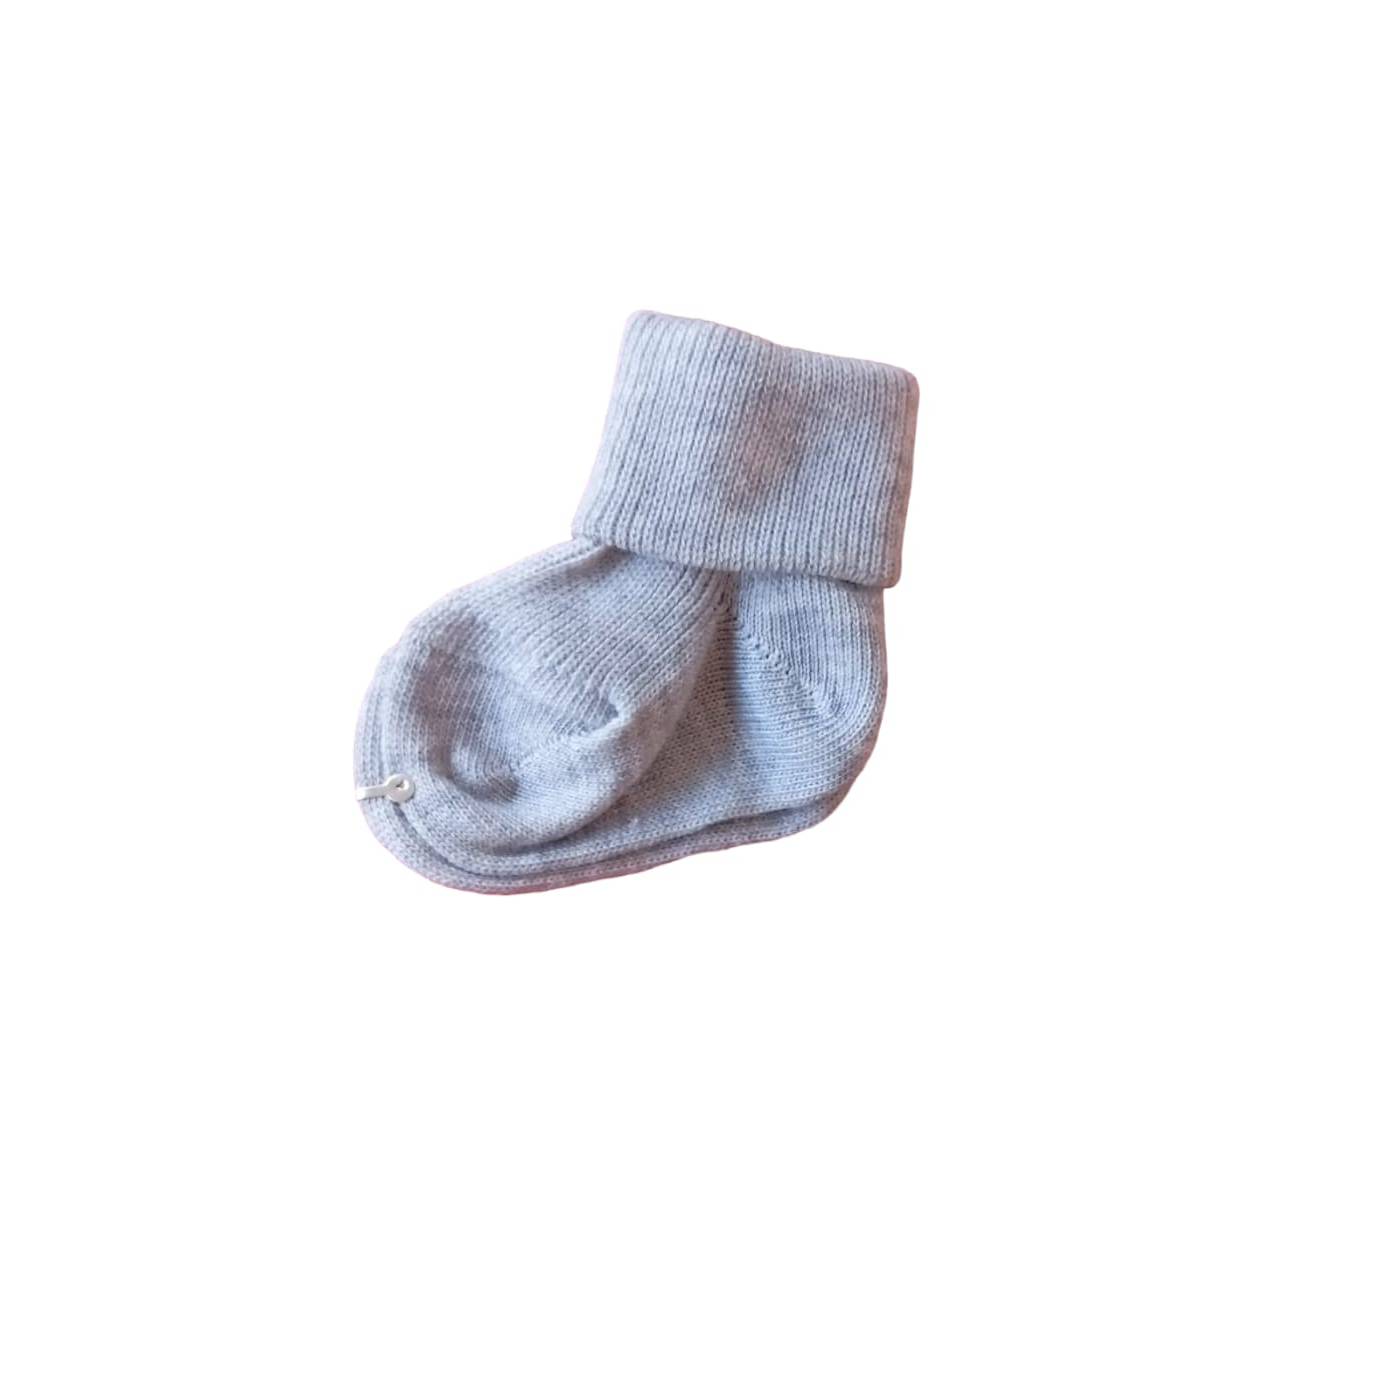 Chaussettes chaudes en coton pour bébé gris taille 000 0/3 mois